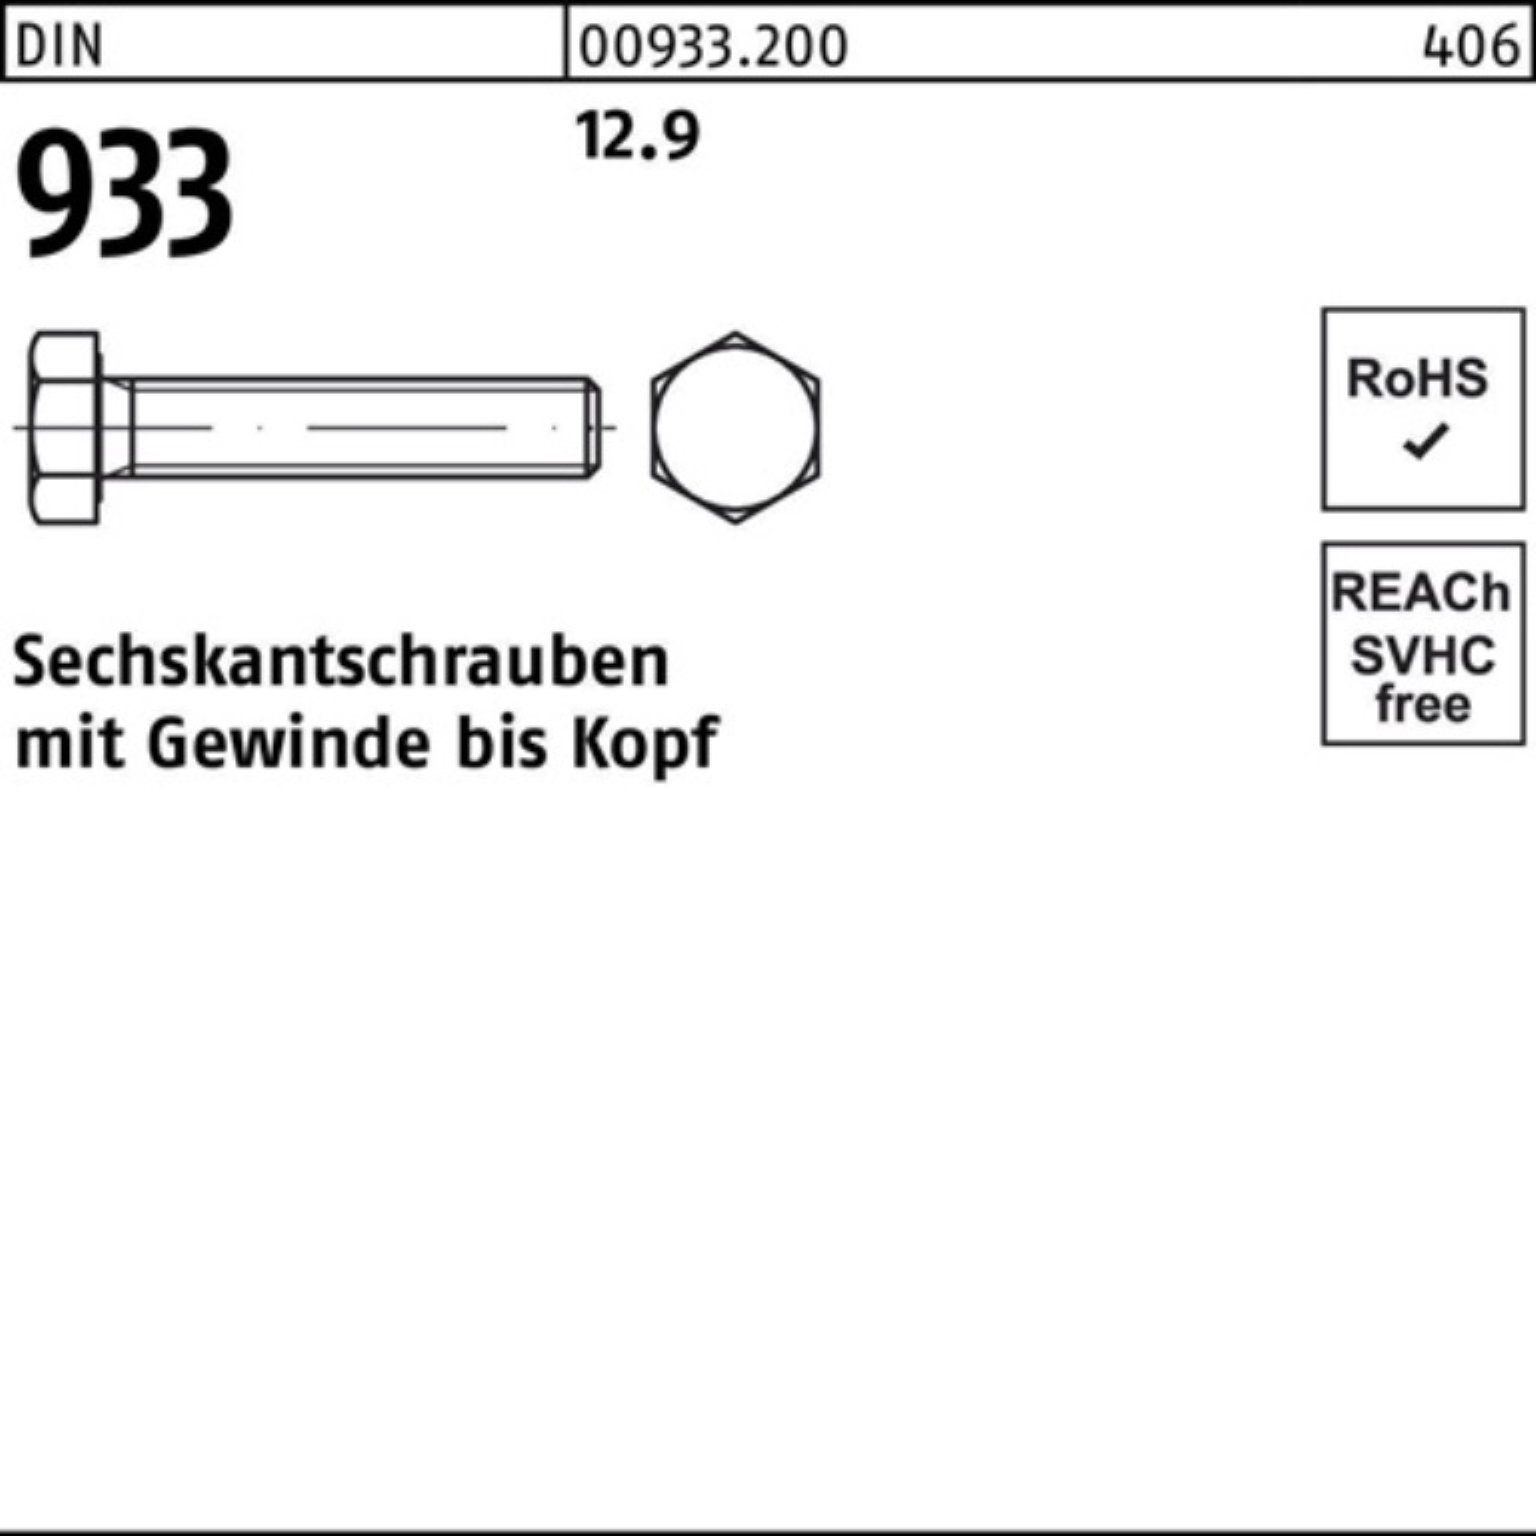 Sechskantschraube 30 933 12.9 Reyher 933 Sechskantschraube DIN VG M8x Stück Pack DIN 200 200er